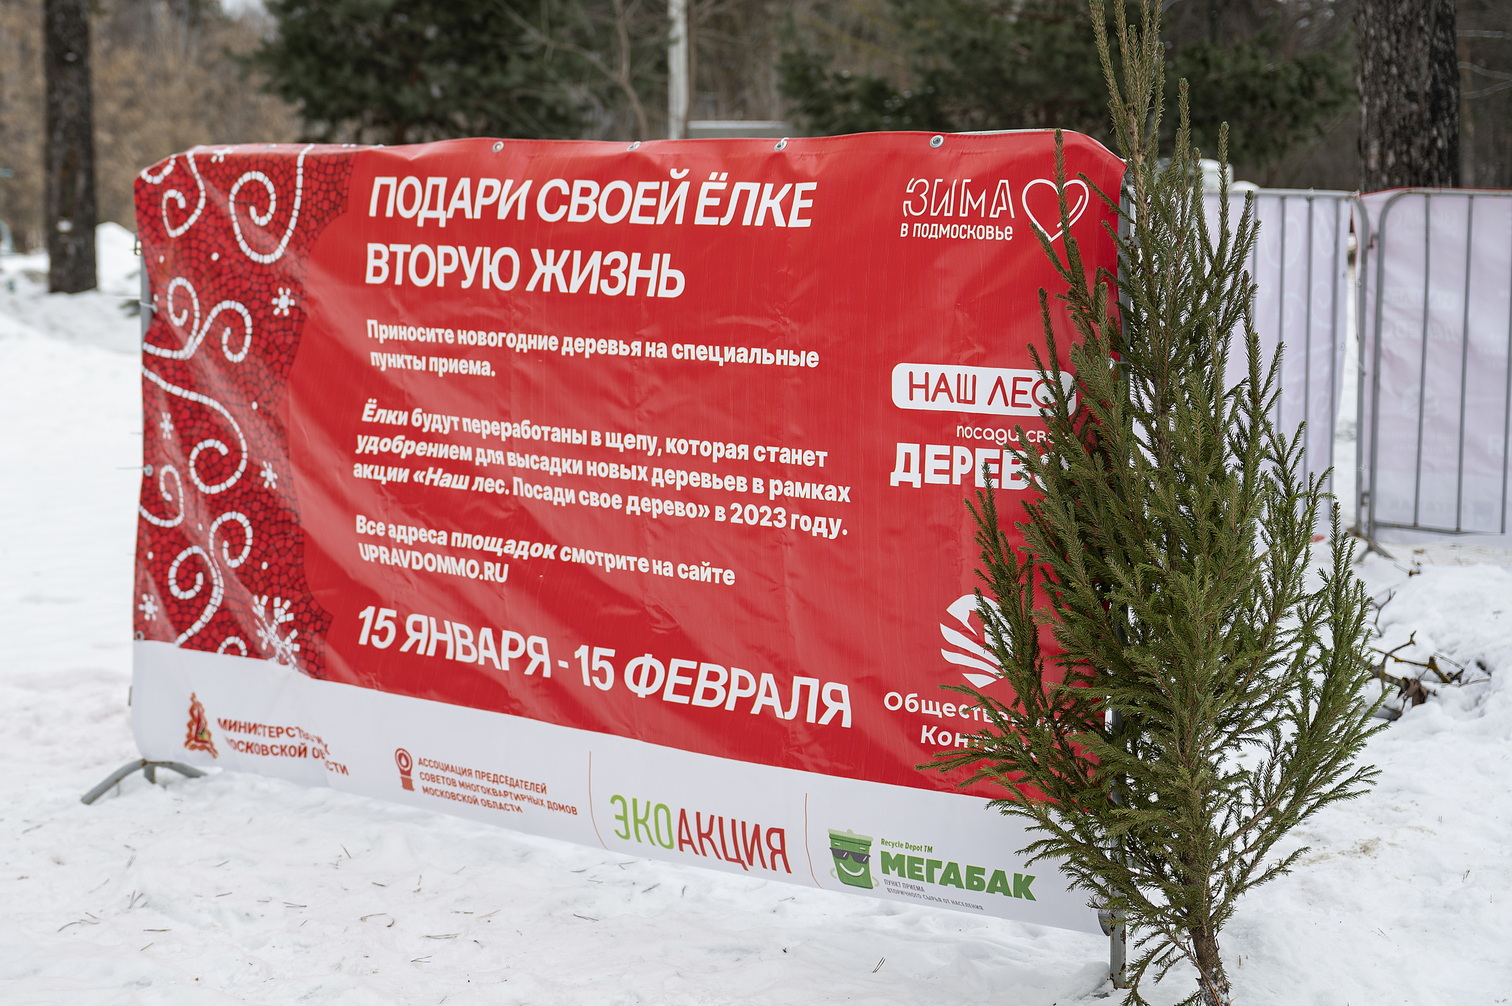 Экологическая акция «Подари своей елке вторую жизнь» стартовала в Ленинском округе